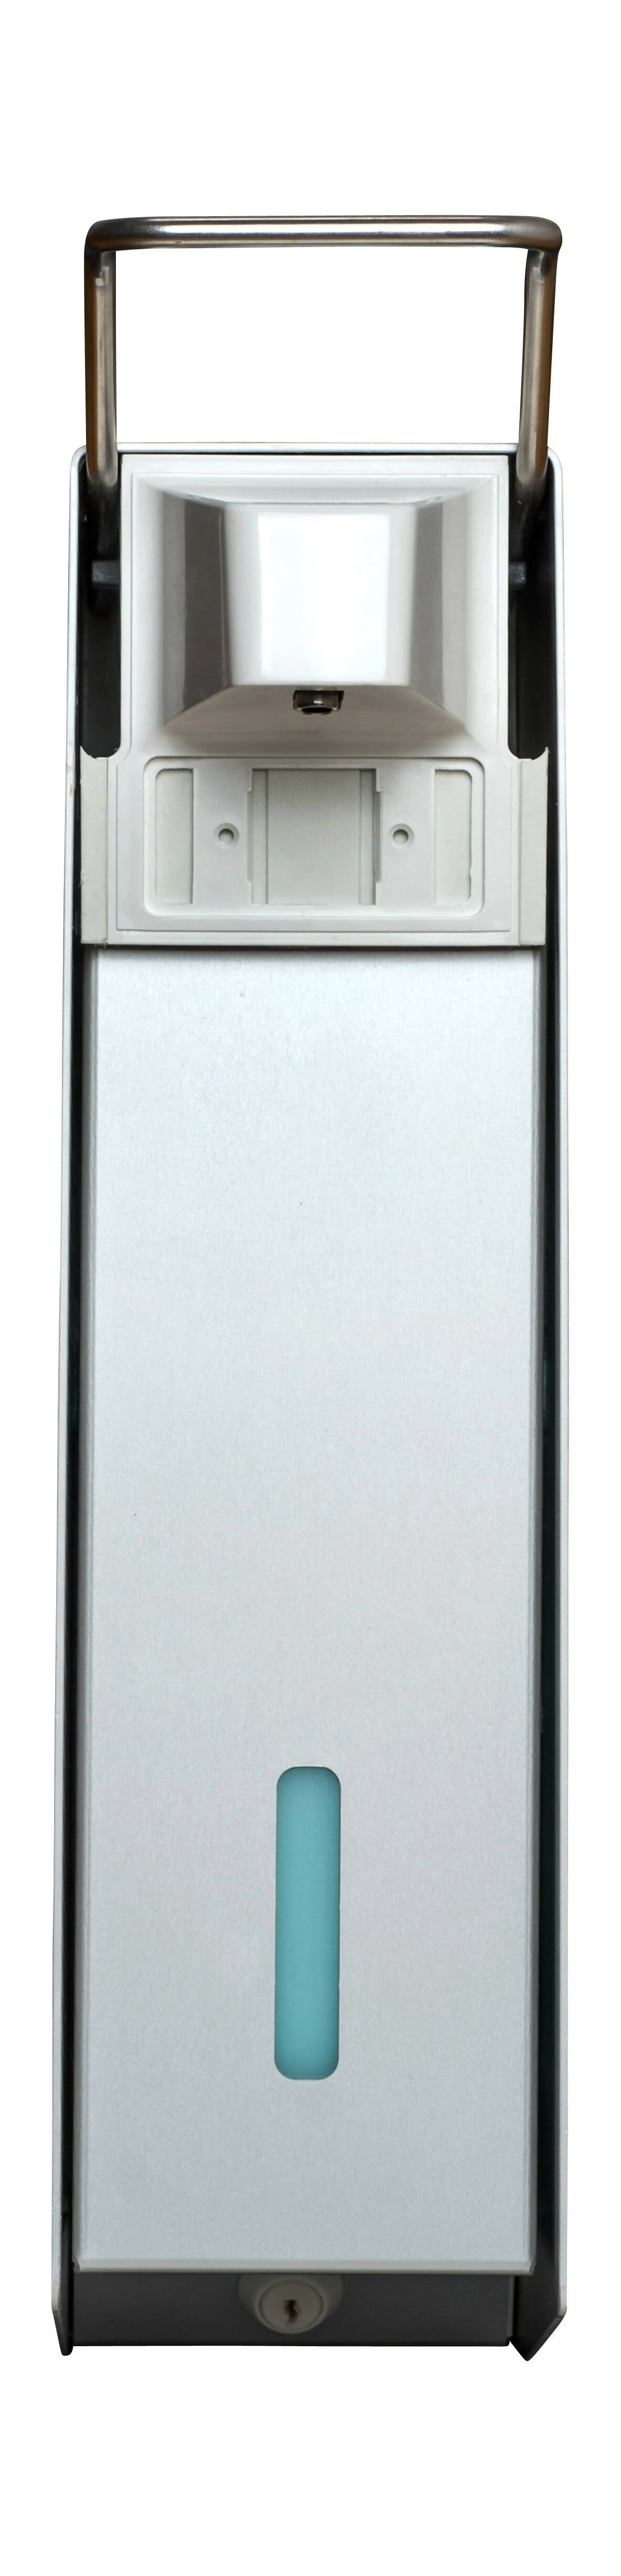 SORIFA - Distributeur mural métallique robuste, ergonomique, verrouillable pour flacon 2.5L de marque SORIFA - Pour gels et savons liquides.